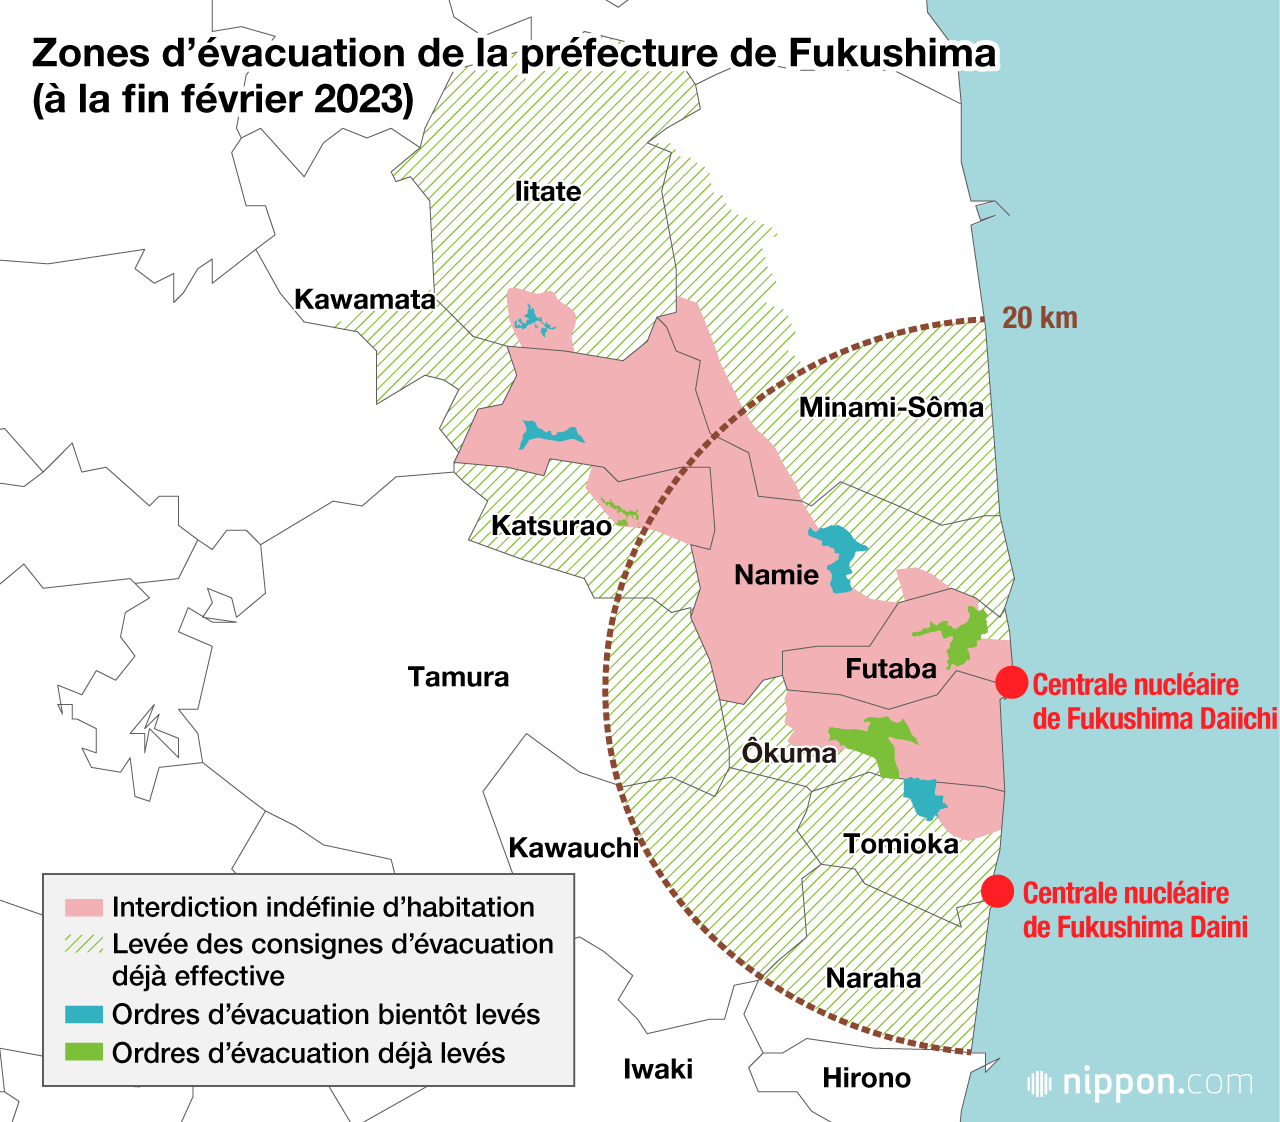 Zones d’évacuation de la préfecture de Fukushima (à la fin février 2023)